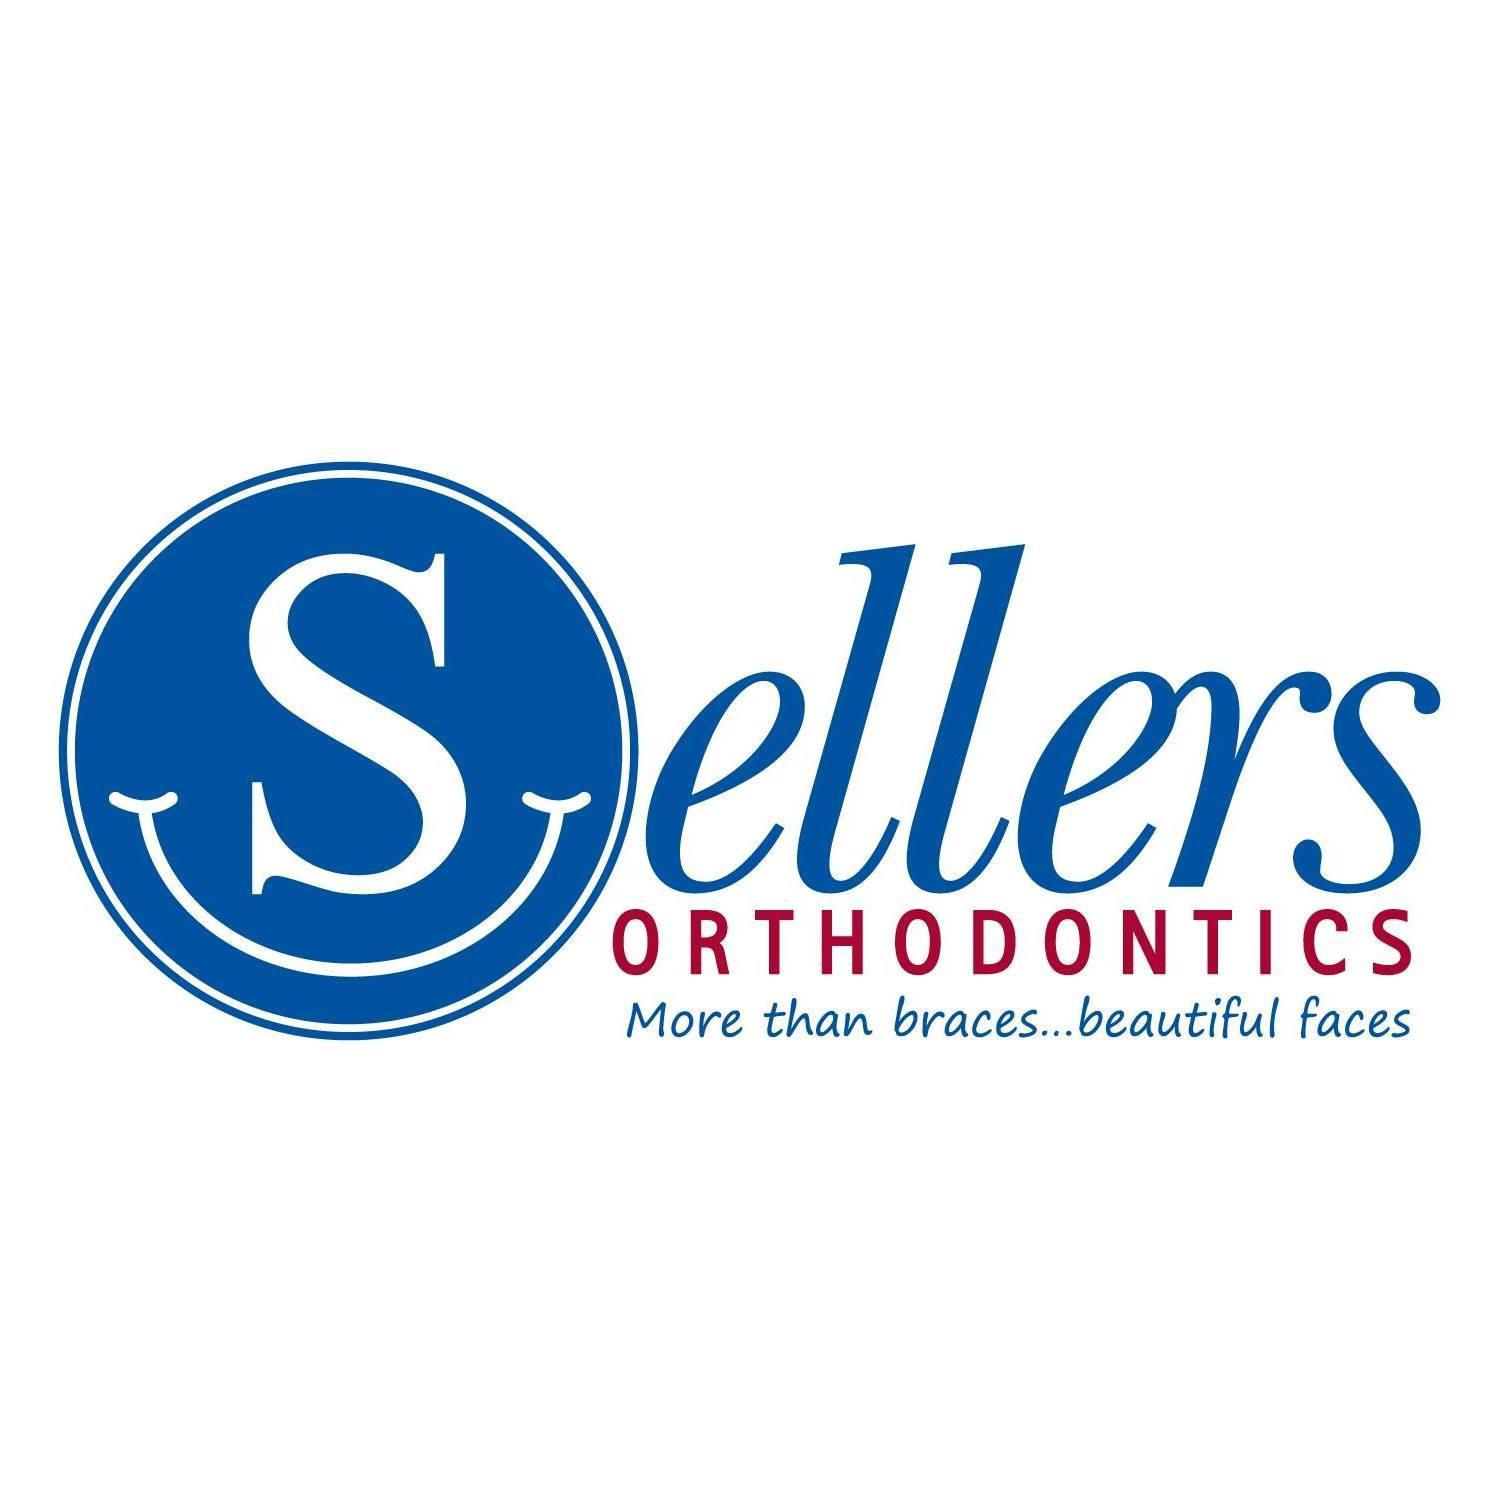 Sellers Orthodontics - Charlotte